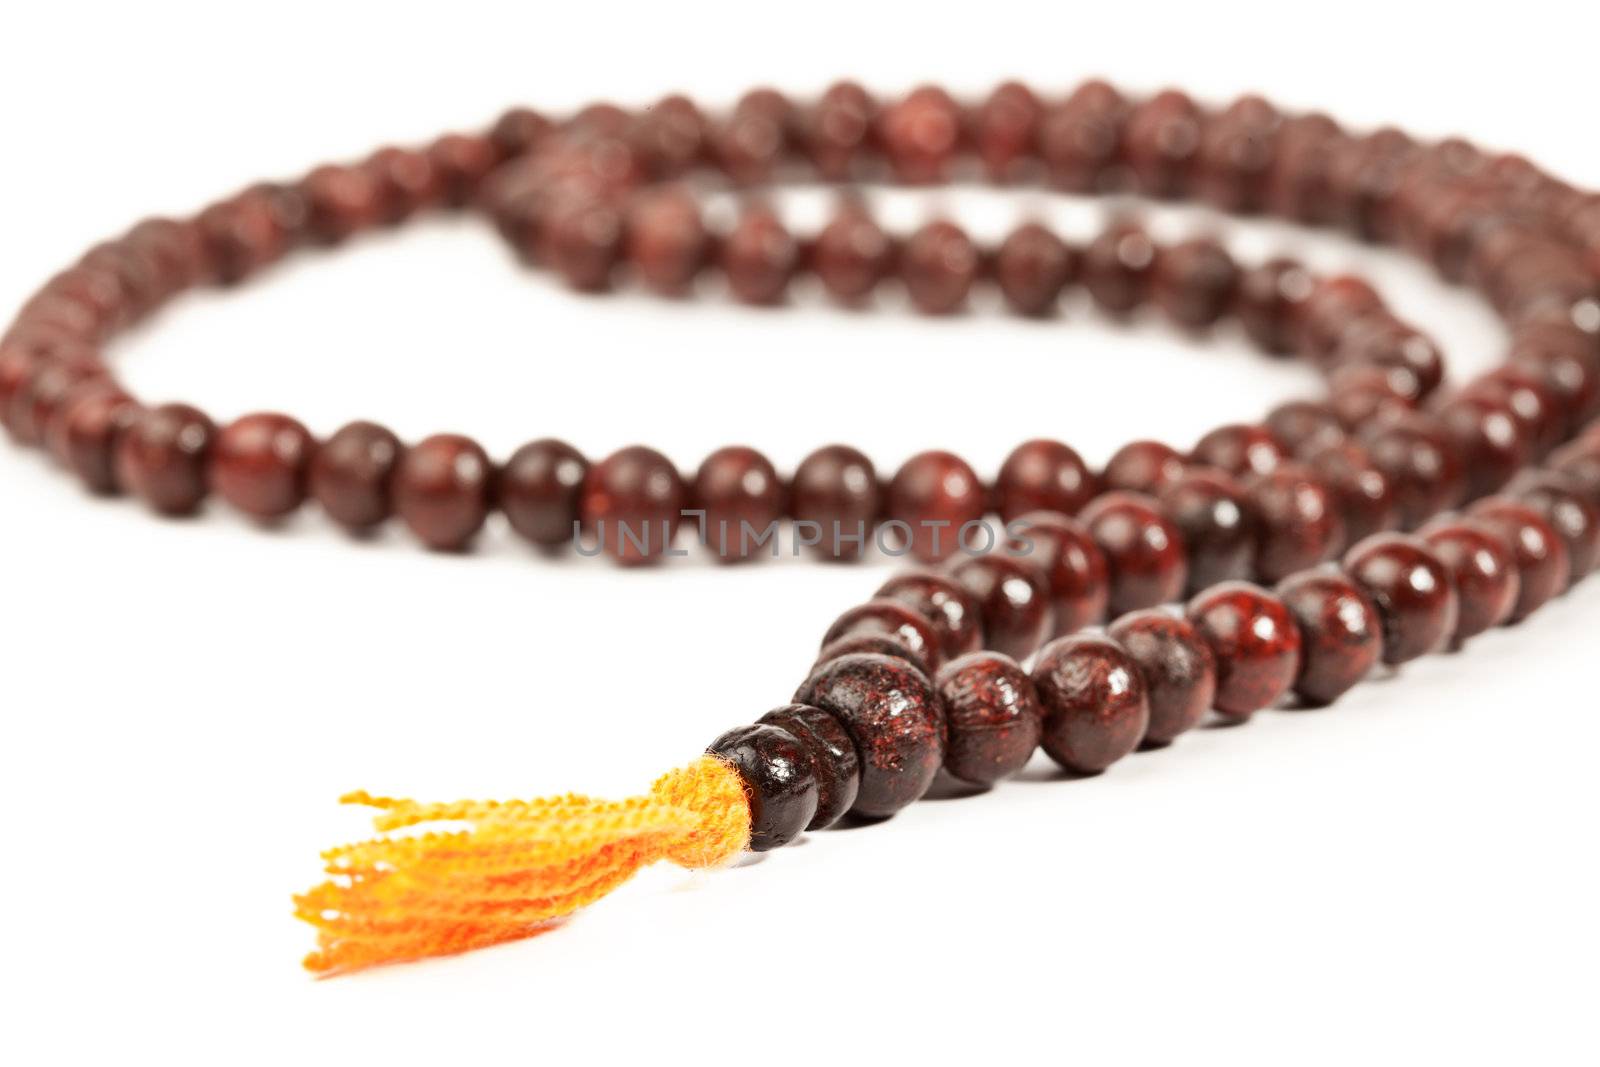 Japa Mala - Buddhist or Hindu prayer beads isolated on white